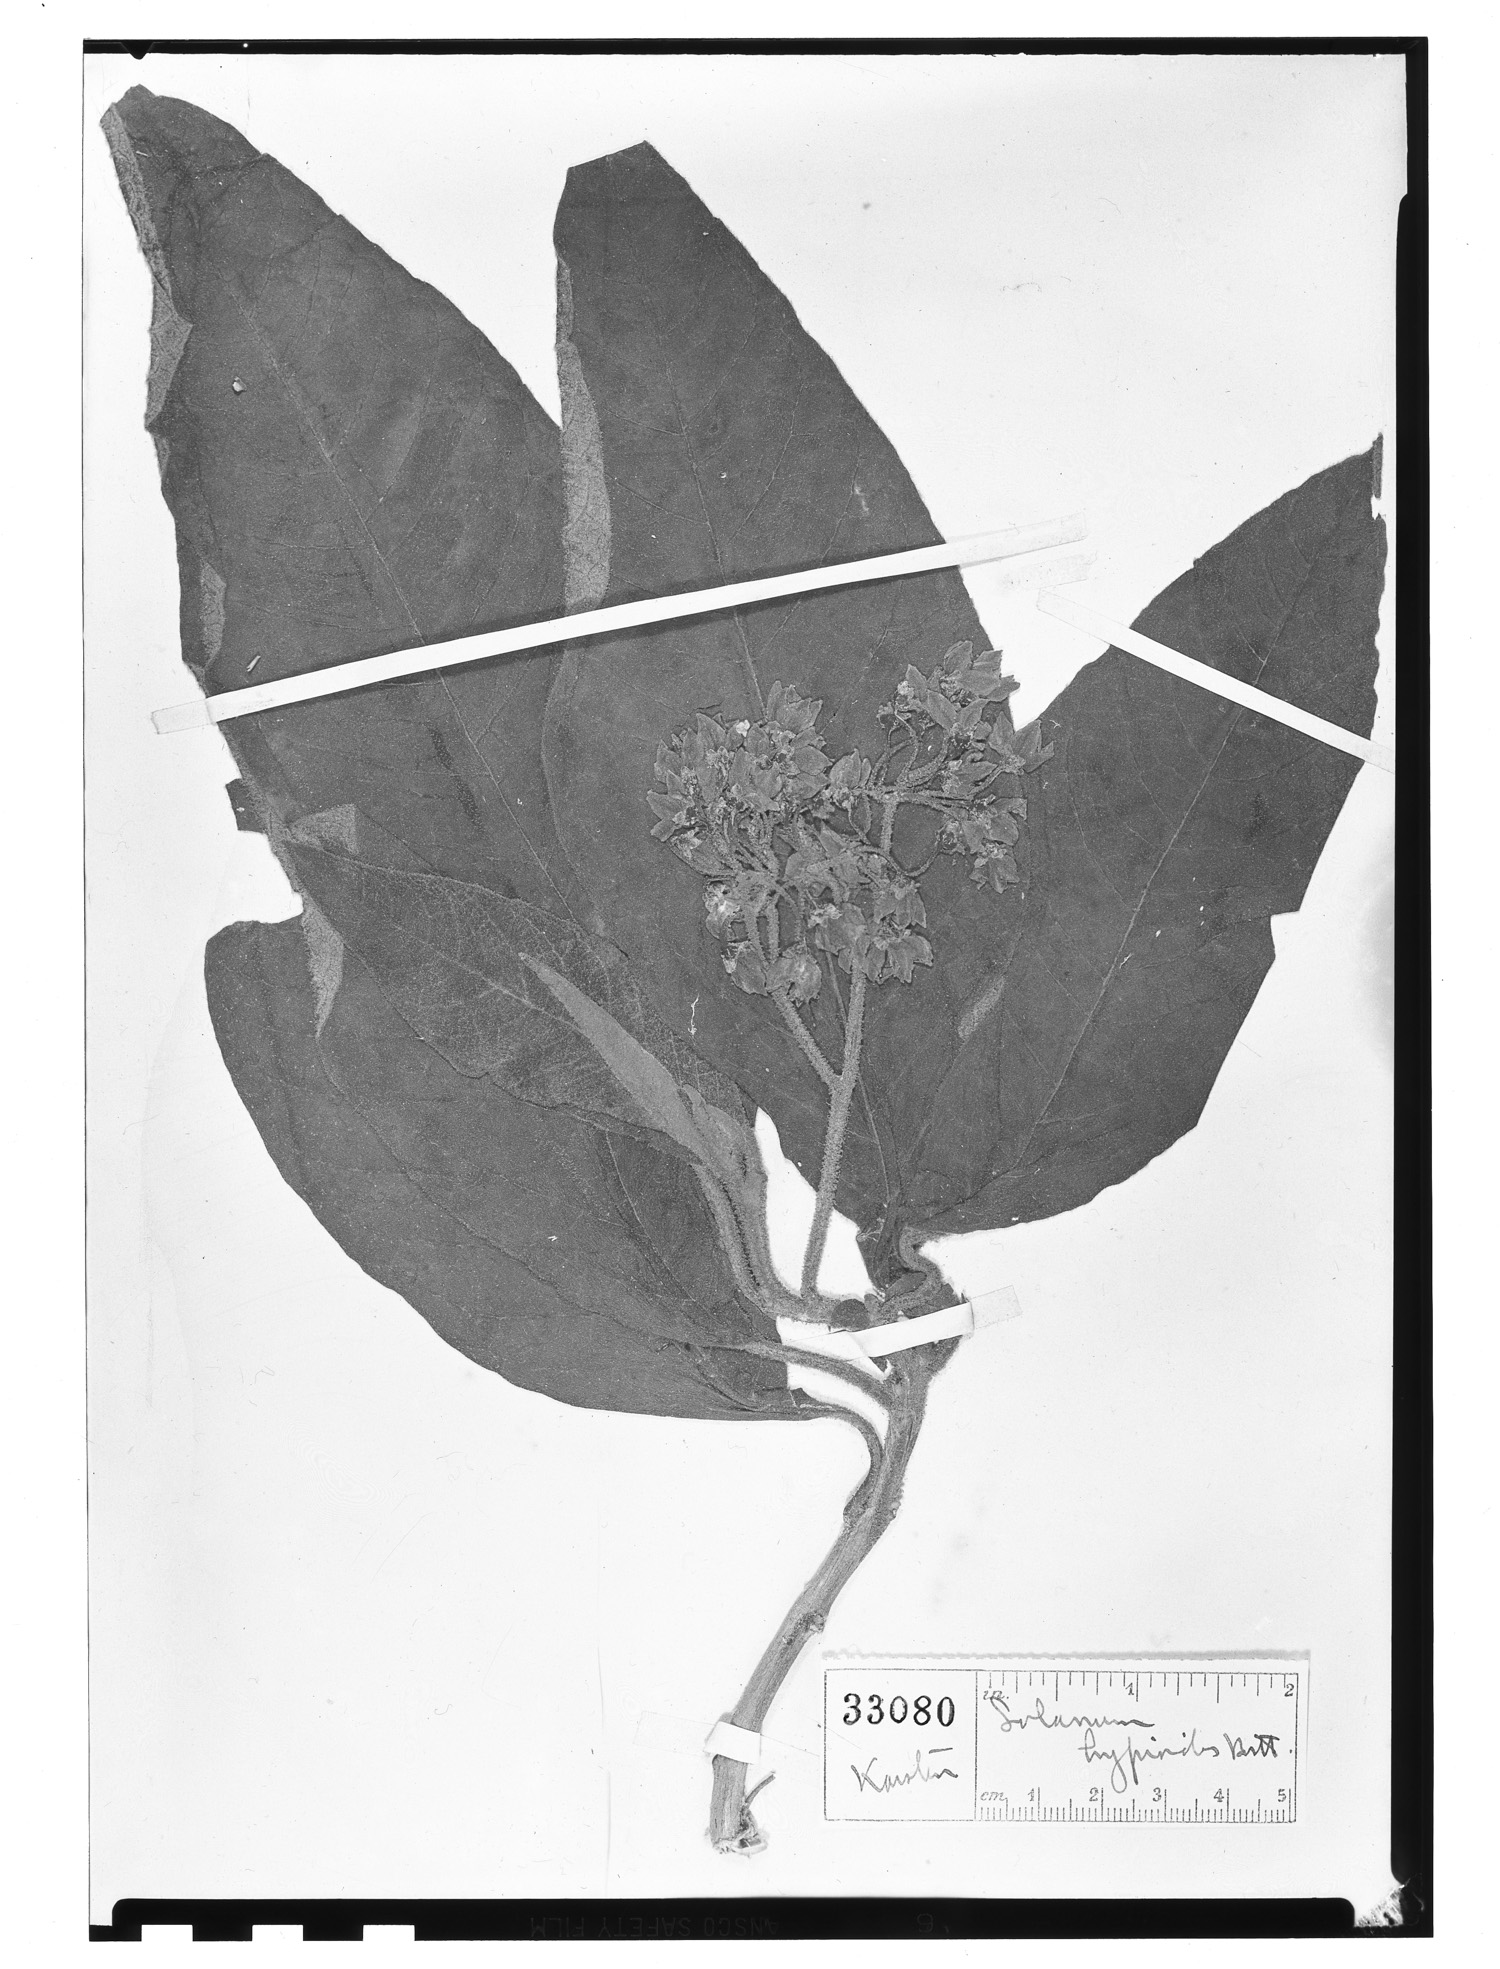 Solanum venosum image